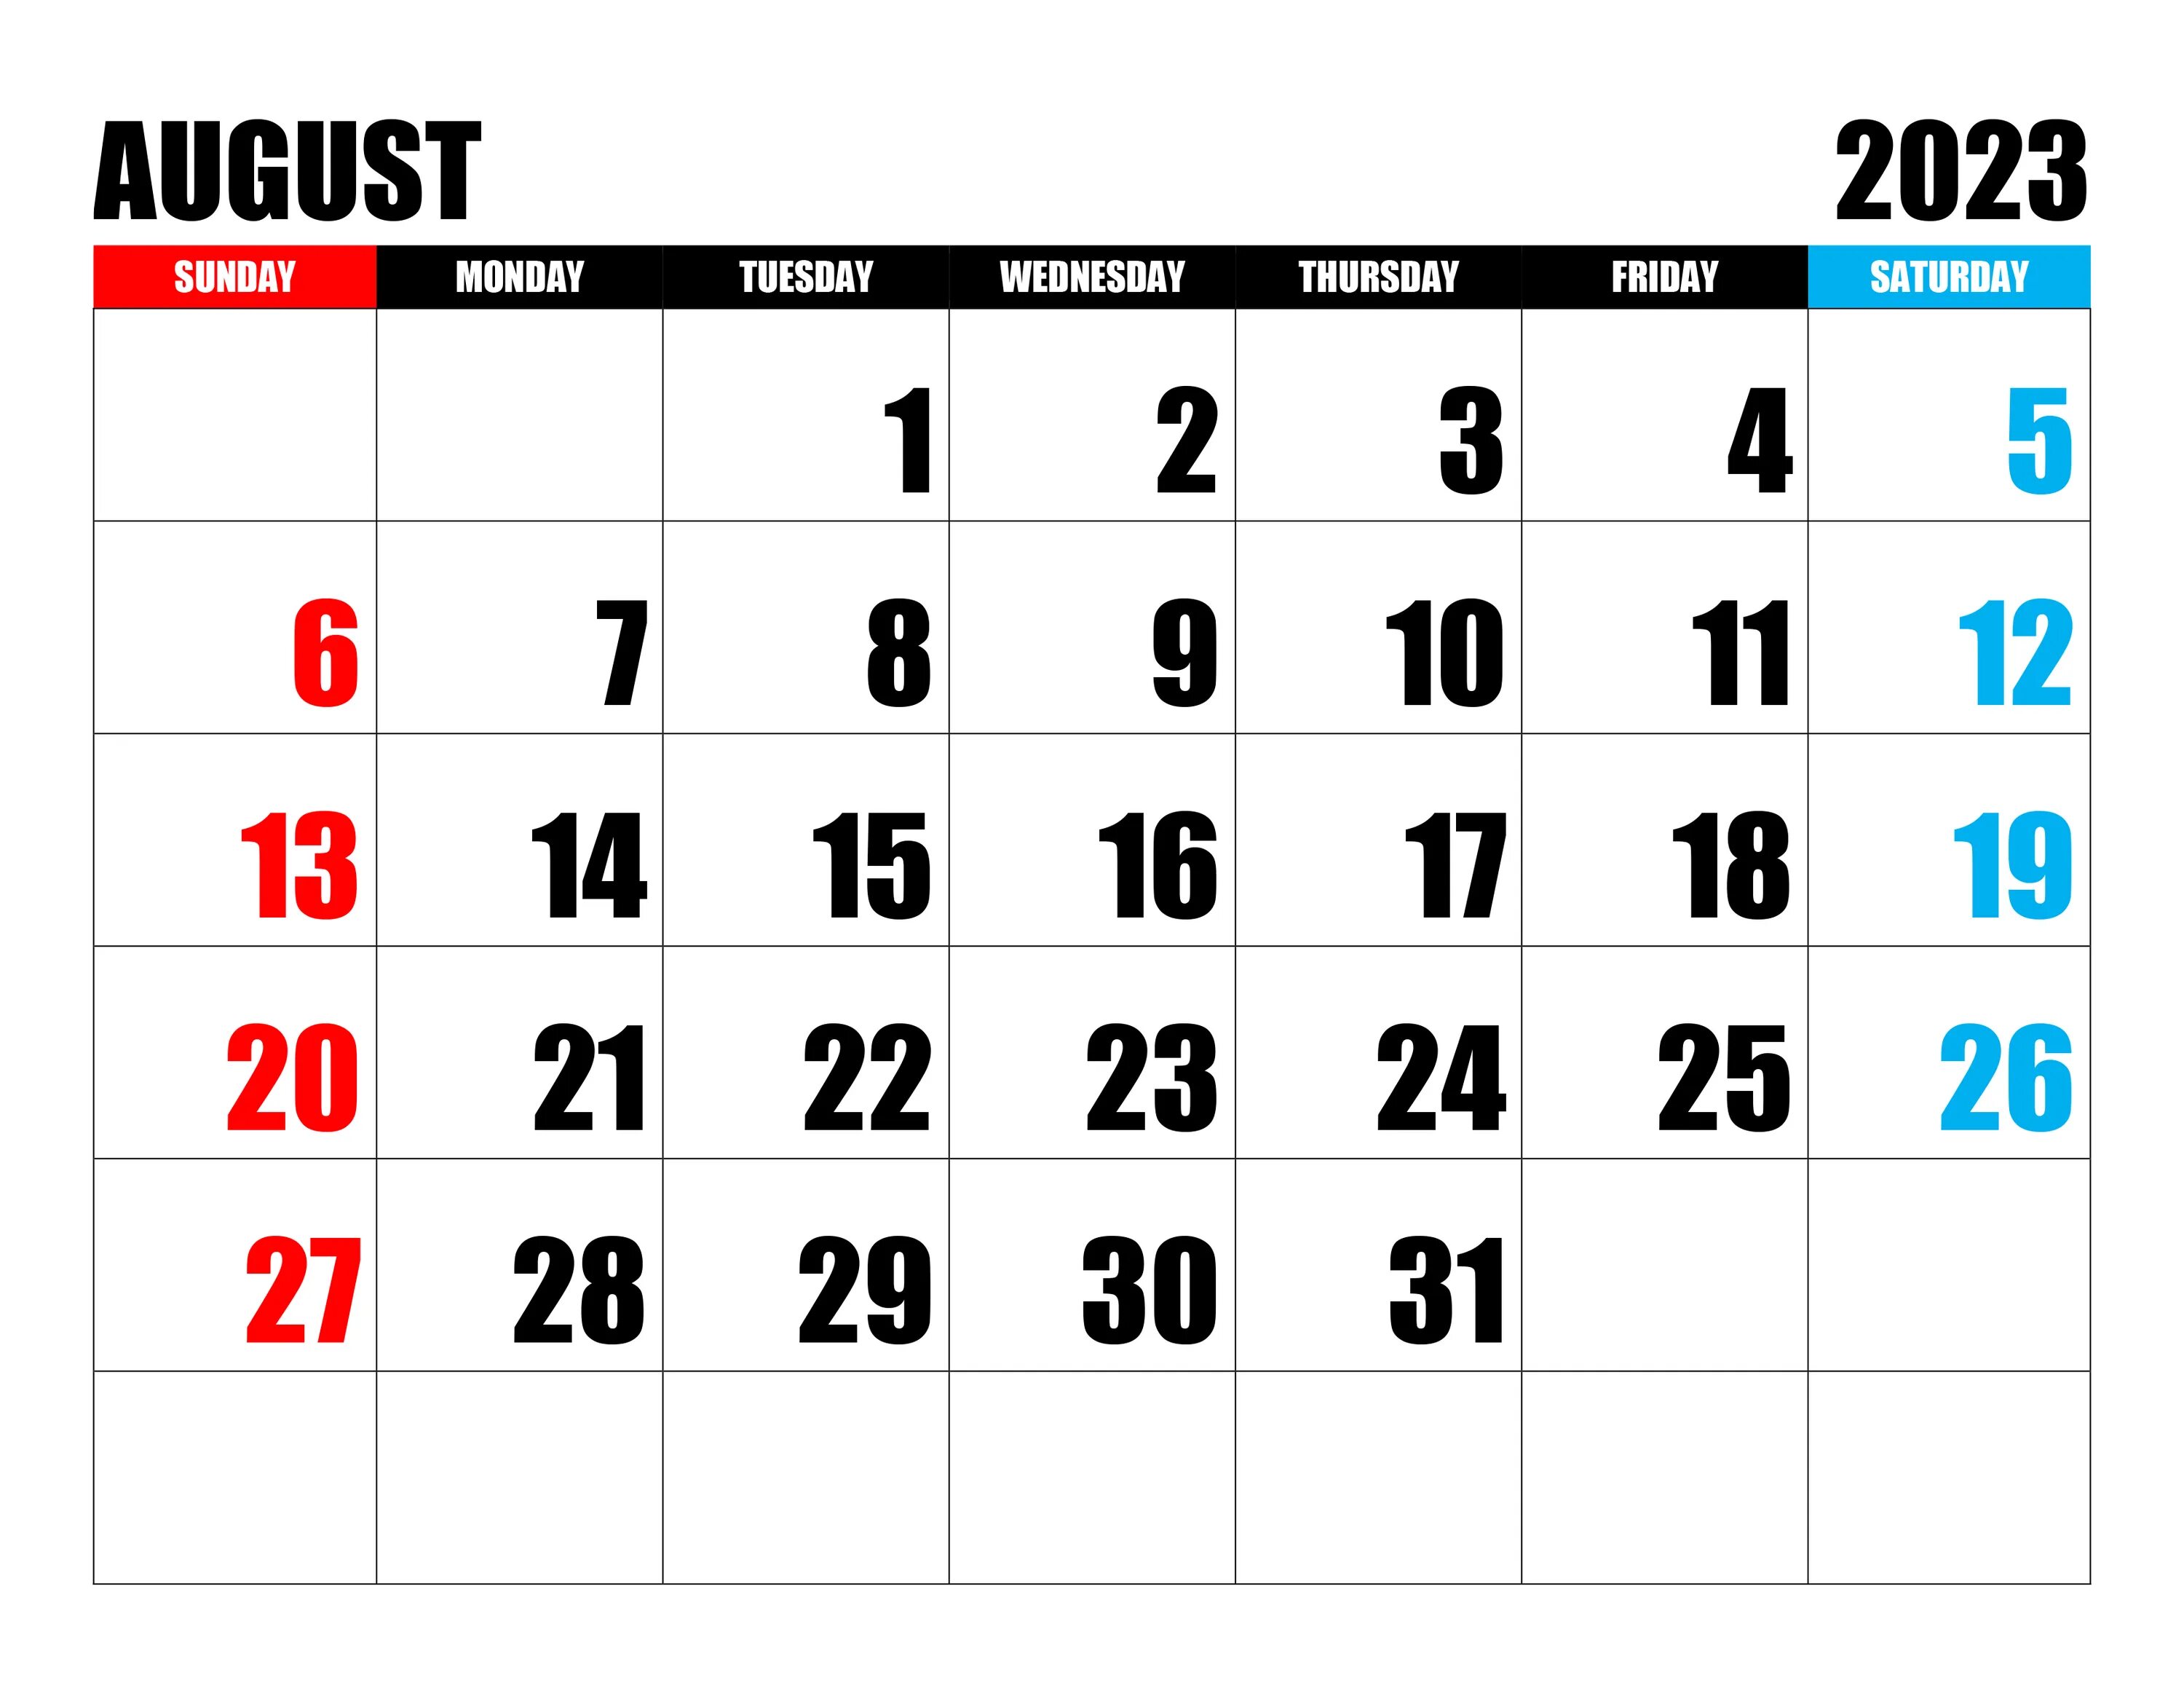 Календарь август 2023. Календарь на август 2023 года. Календарь на аагуст2023 года. Календарь июль август 2023. Дни недели июнь 2023